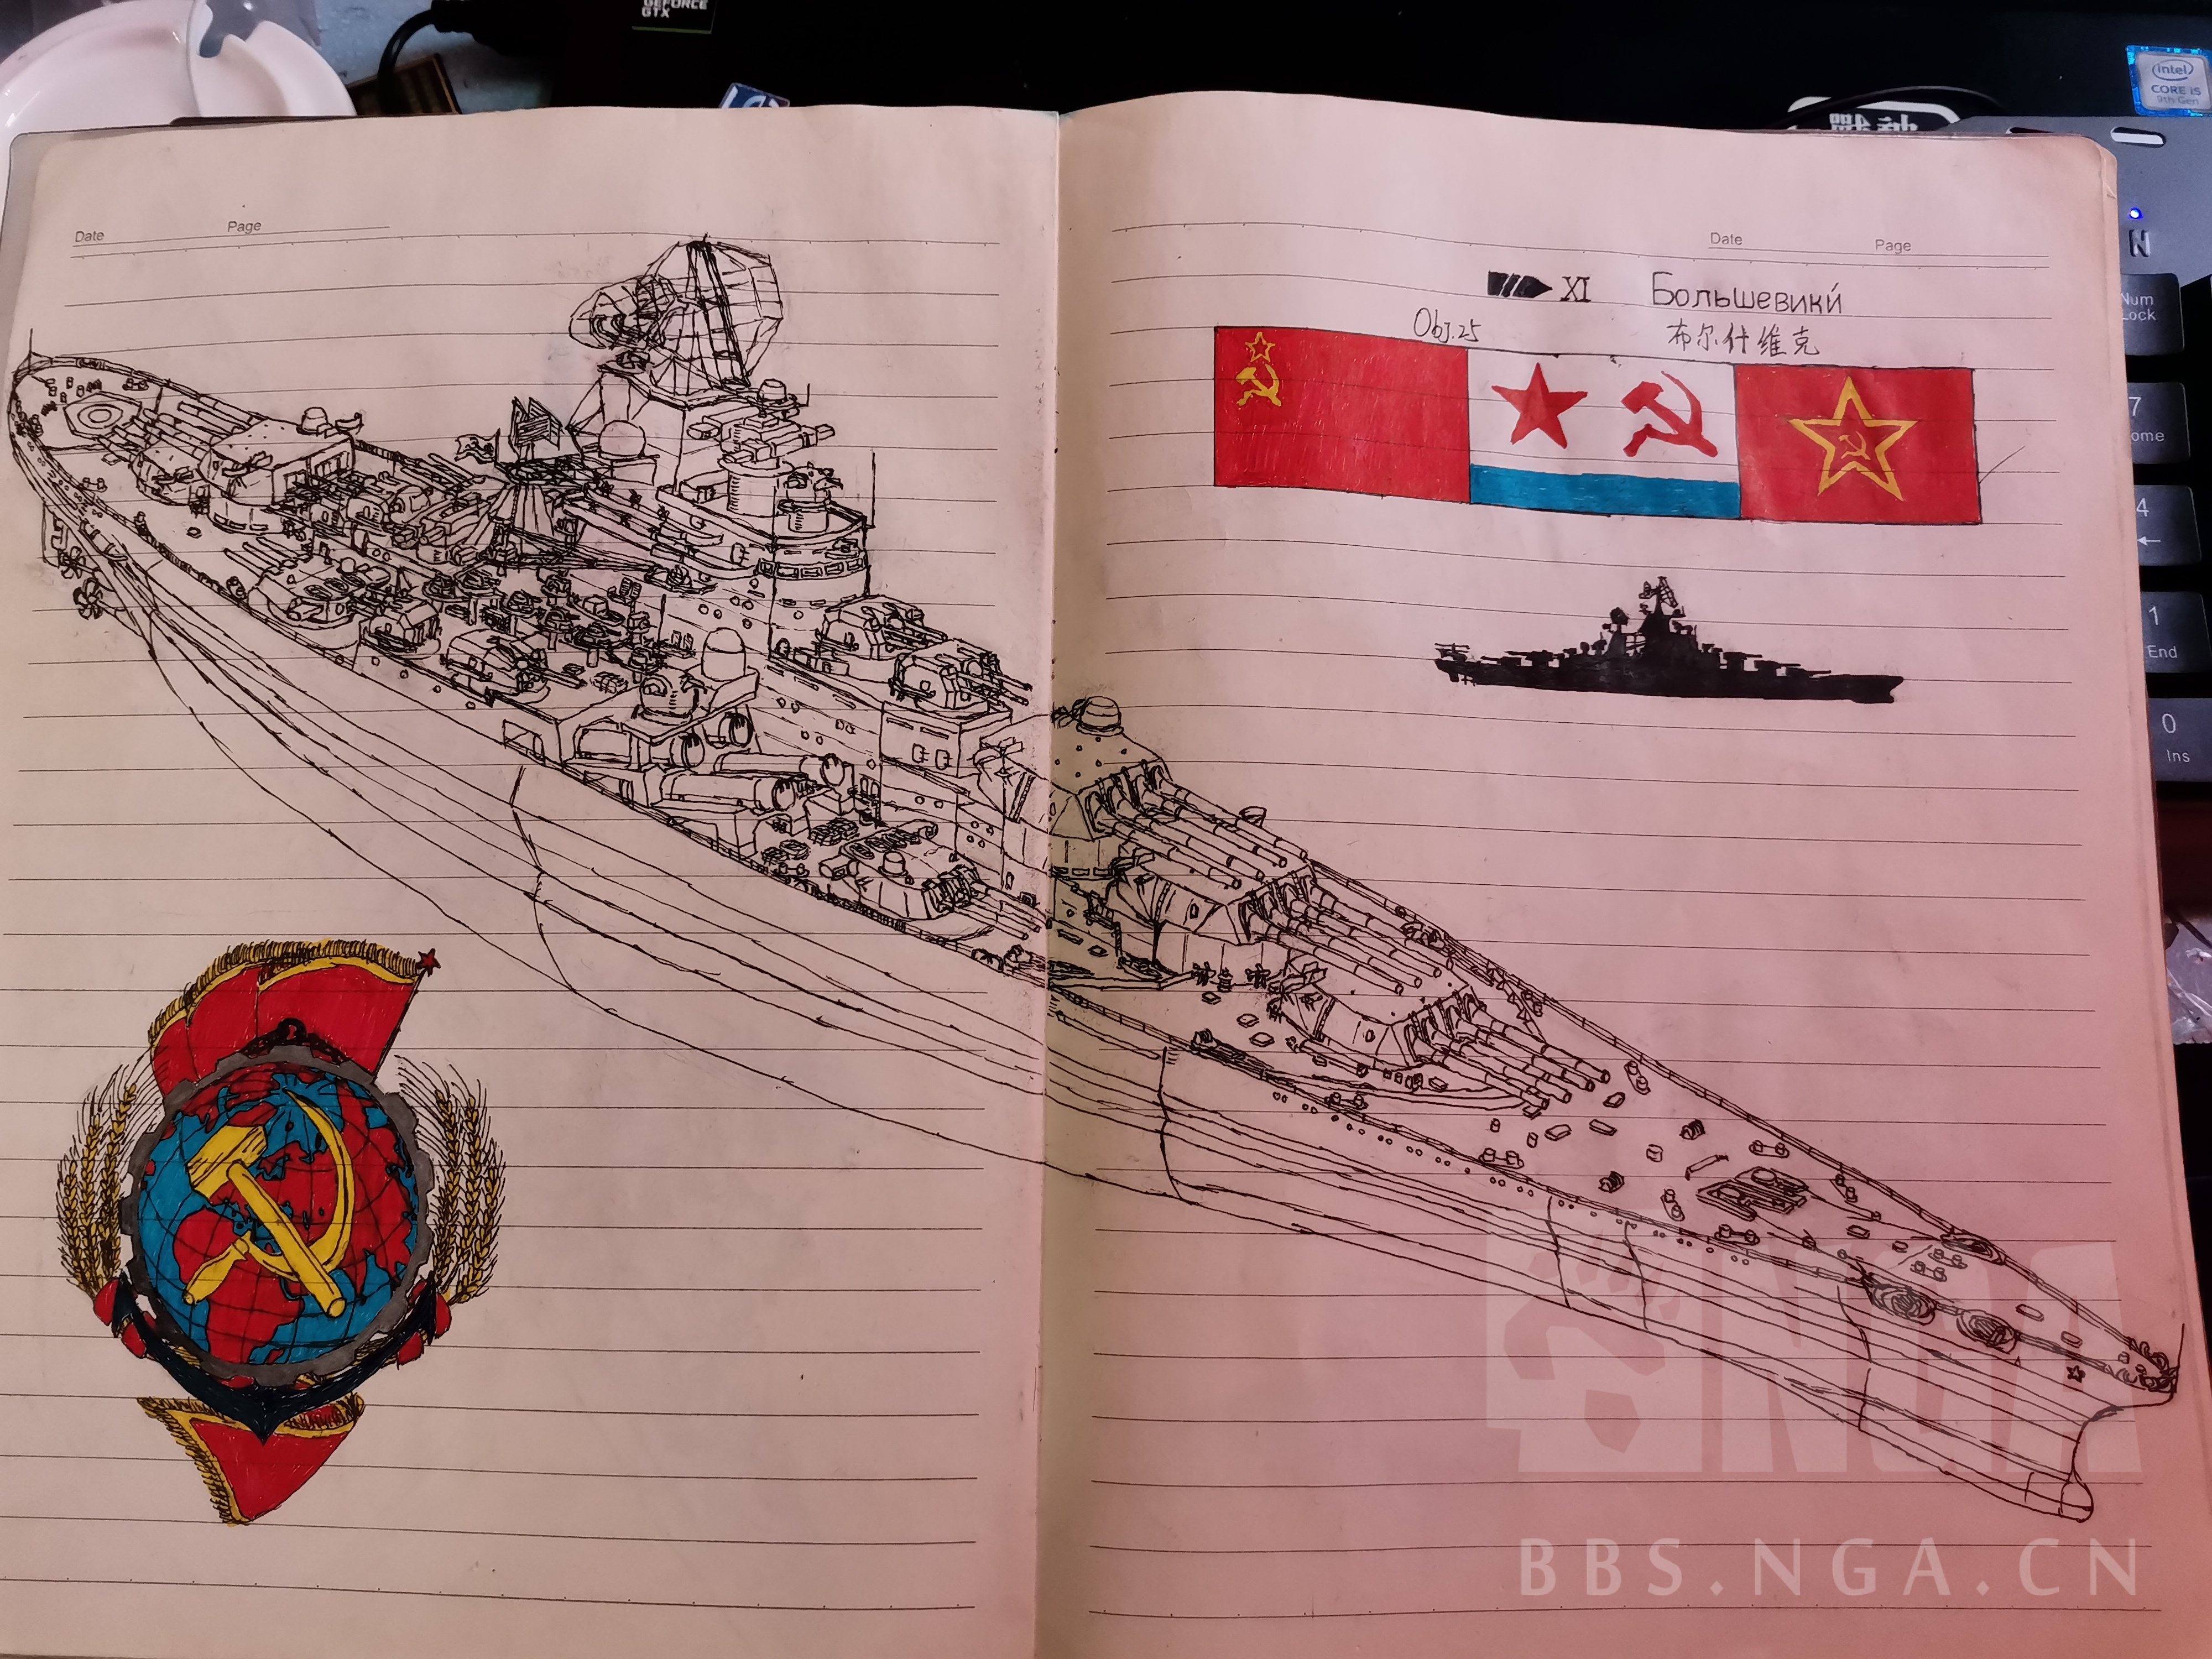 水 平行世界的wows 多图预警 整活 Armada Xi Bolshevik 无敌舰队 Xi 布尔什维克nga玩家社区